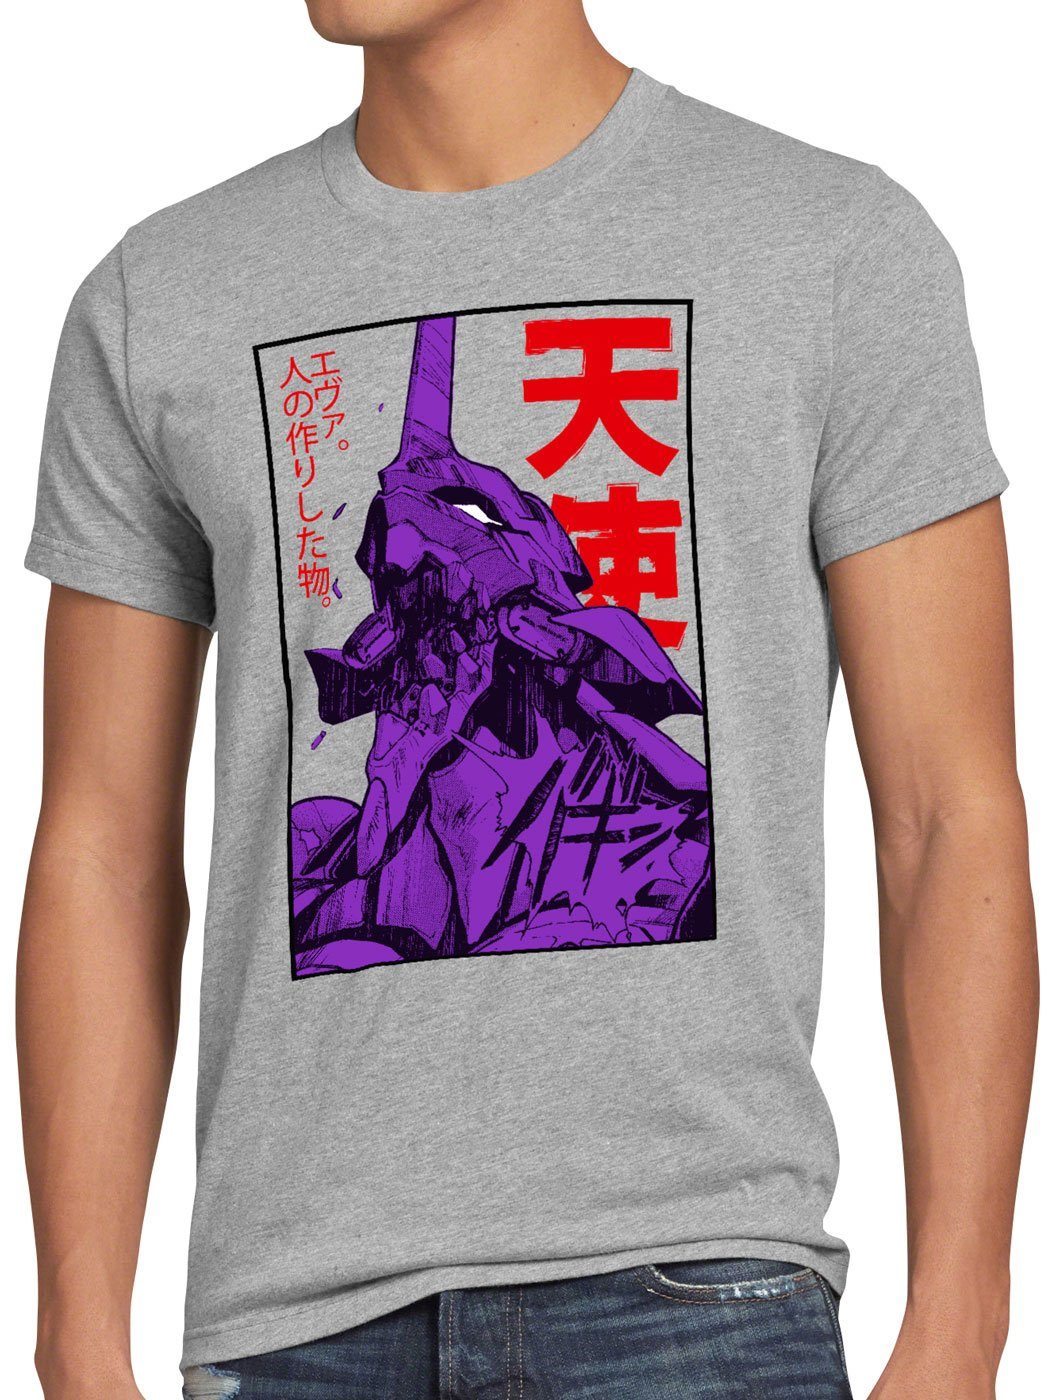 Neo-Tokyo style3 3 japanisch Herren meliert T-Shirt Print-Shirt grau evangelion Rage anime